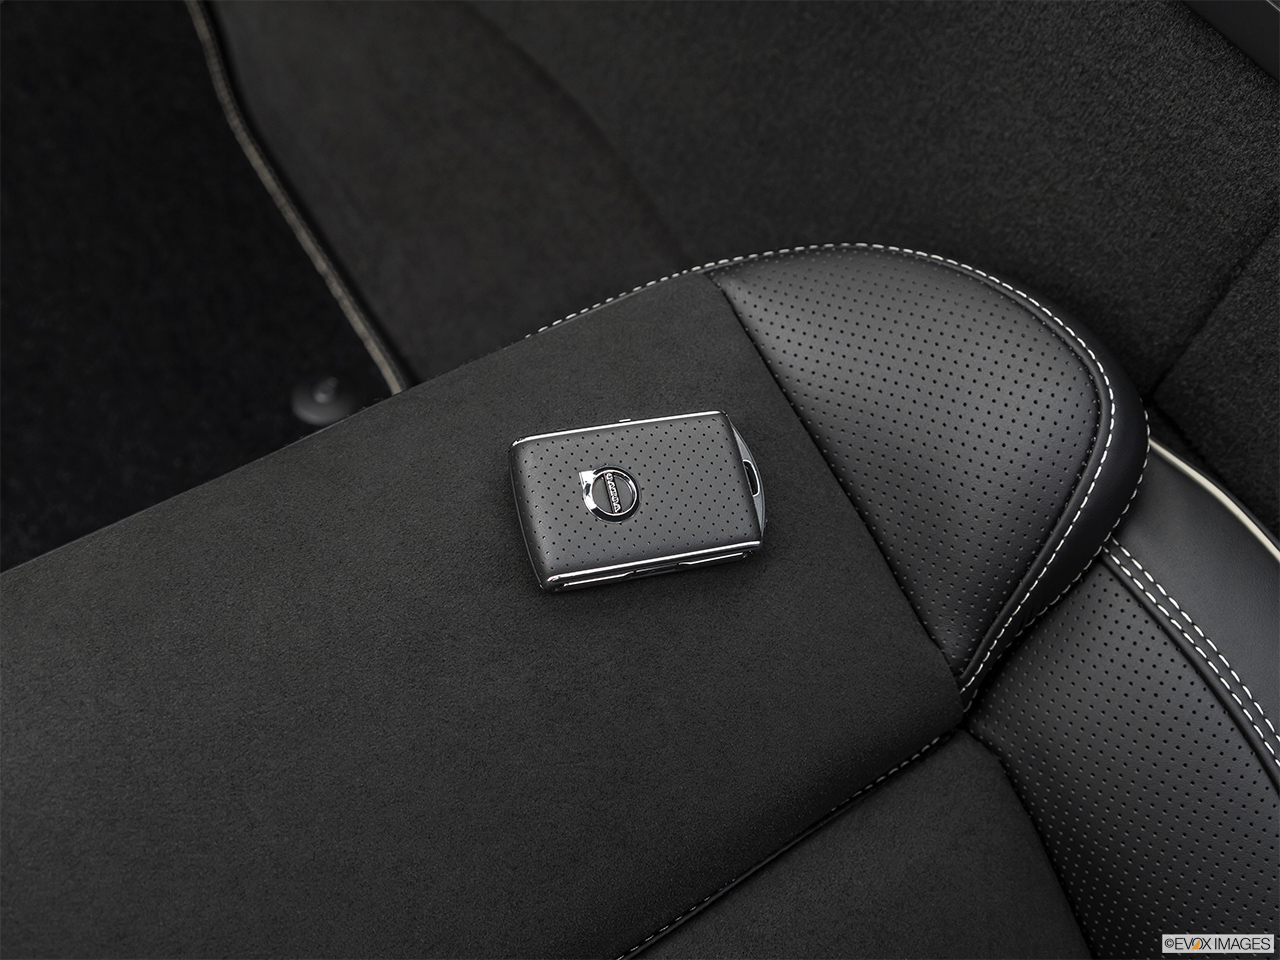 2019 Volvo XC60 T8 R-Design eAWD Plug-in Hybrid Key fob on driver's seat. 